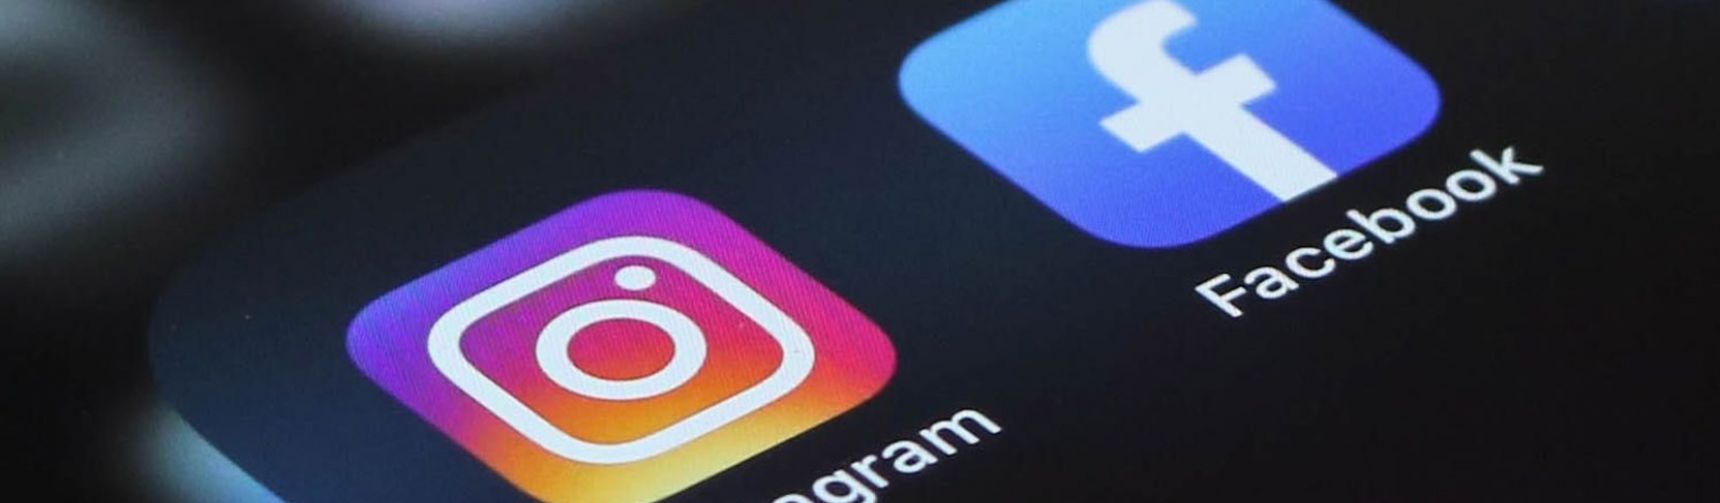 Facebook e Instagram: gestire i social per i media e le aziende